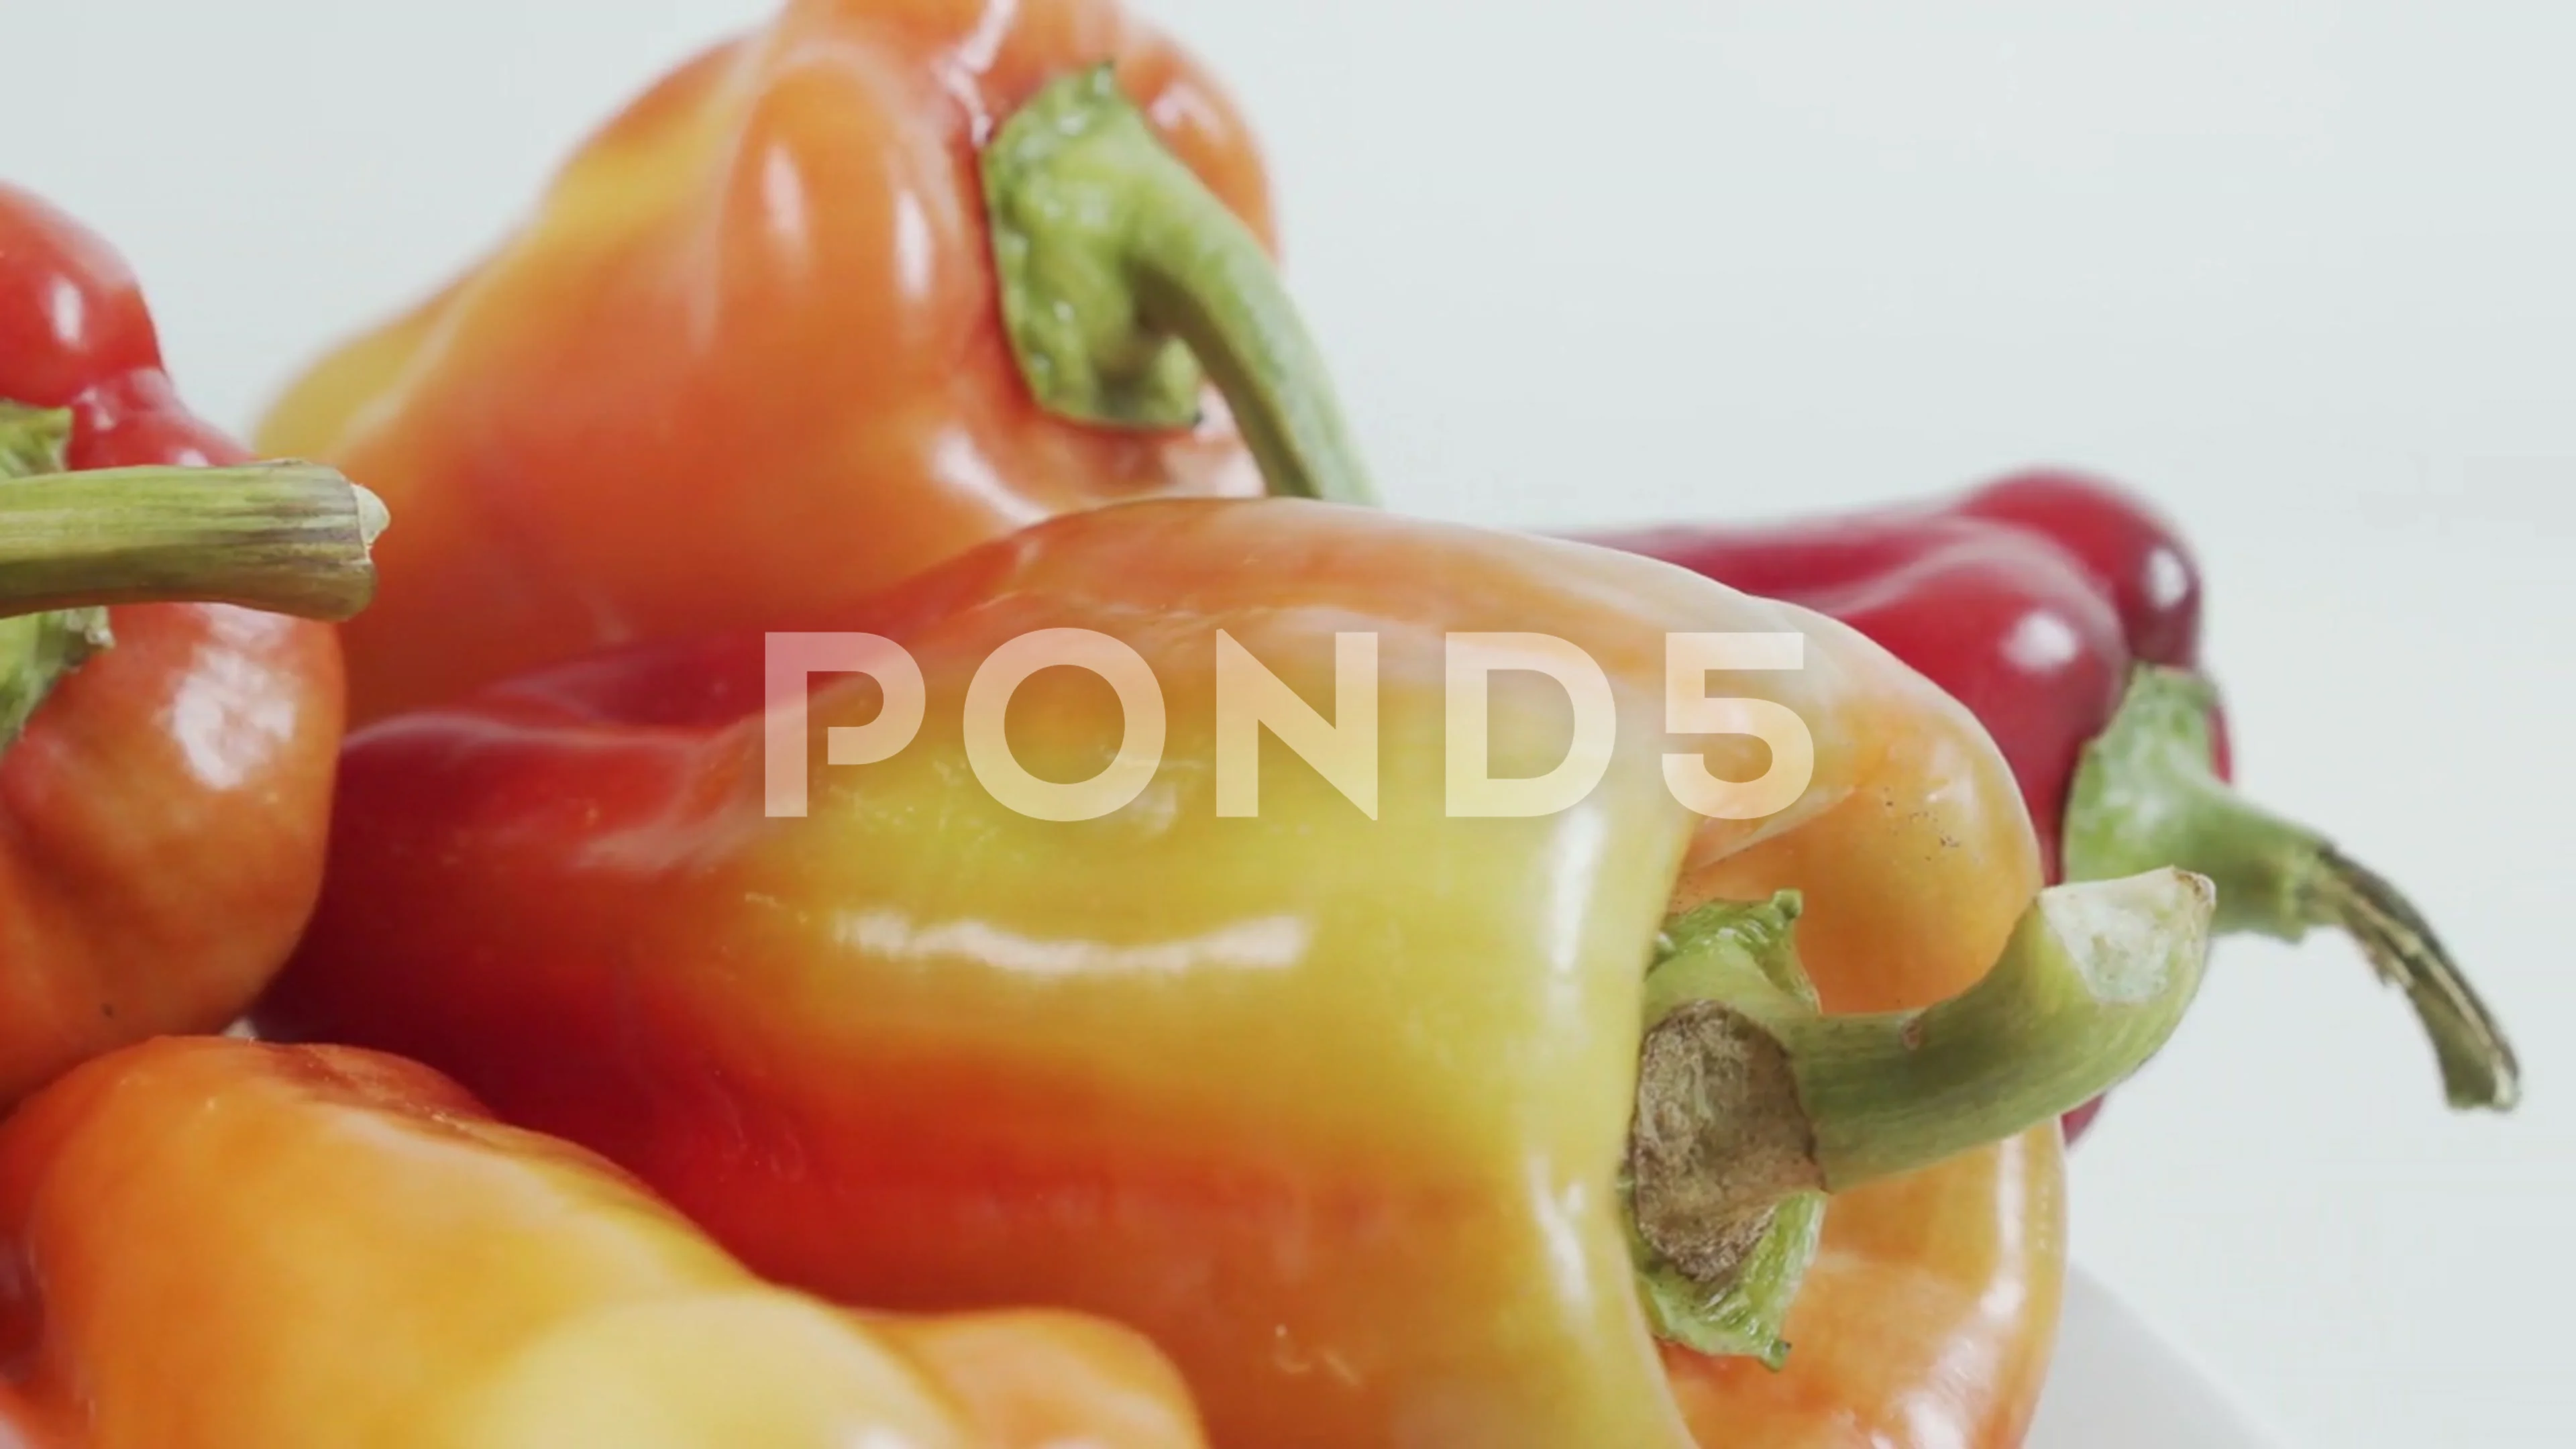 https://images.pond5.com/assorted-paprika-vegetable-stack-4k-171910410_prevstill.jpeg